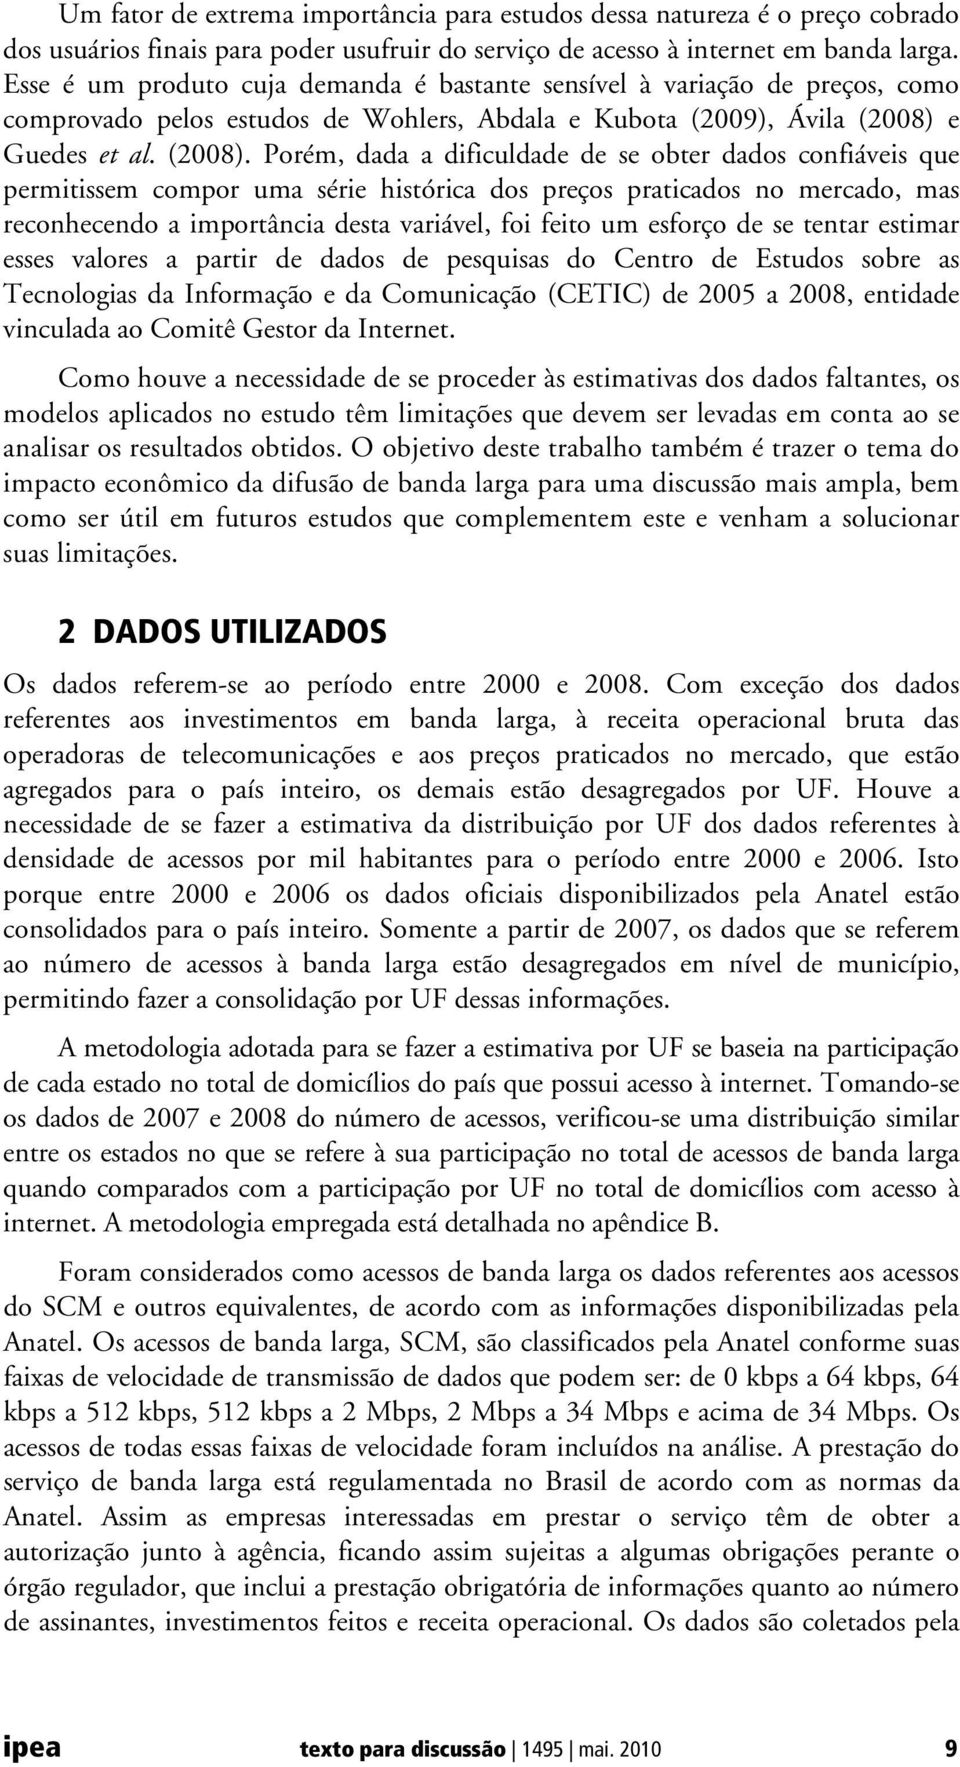 e Guedes et al. (2008).